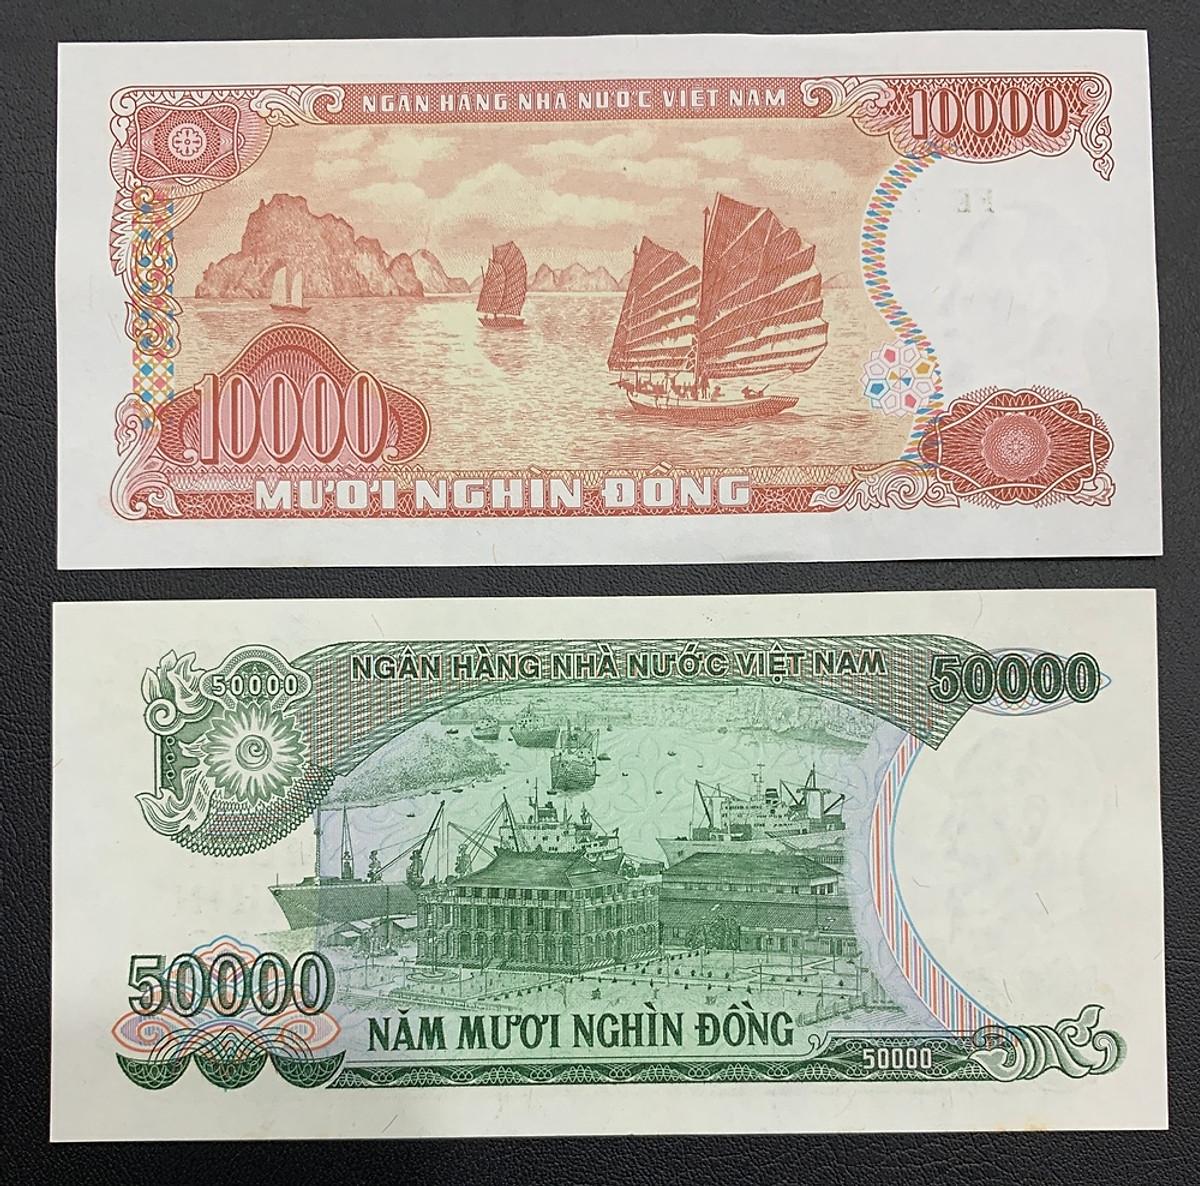 [MỚI 99%] 2 tờ tiền 10k giấy đỏ 1993 và 50k giấy xanh lá 1994 , tiền thời bao cấp sưu tầm, sưu tầm